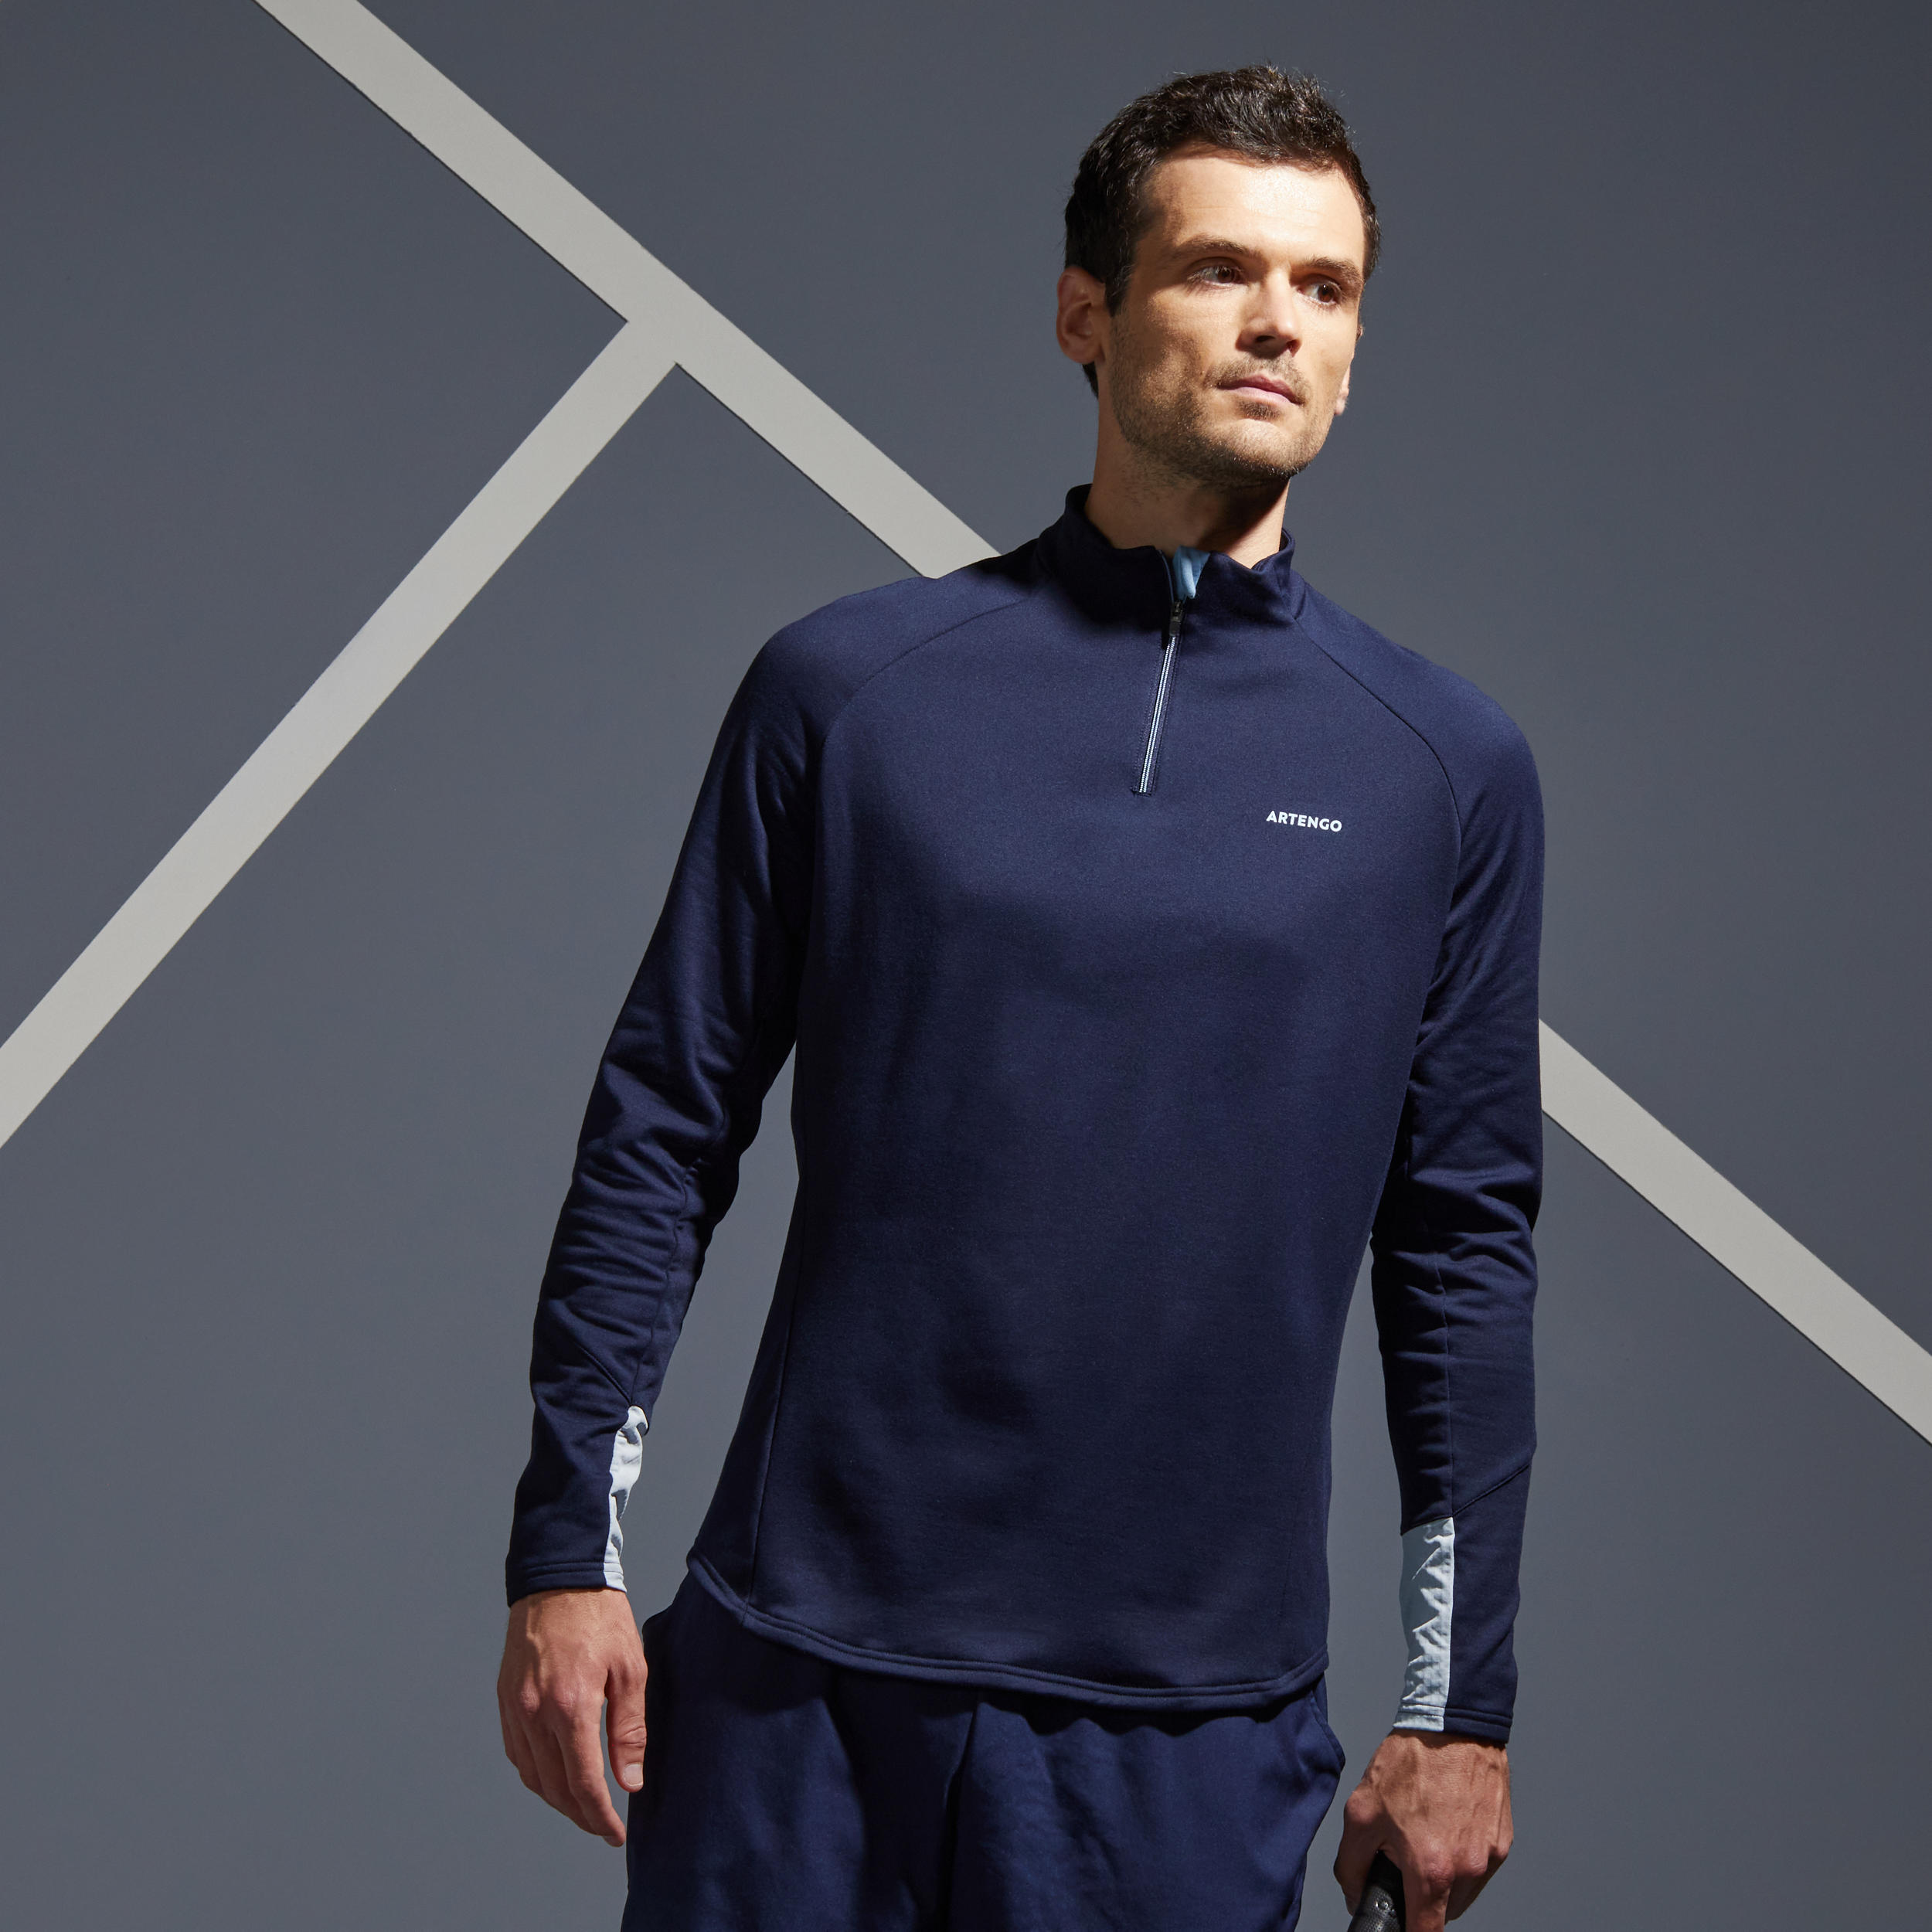 ARTENGO Men's Half-Zip Long-Sleeved Thermal Tennis Sweatshirt - Navy Blue